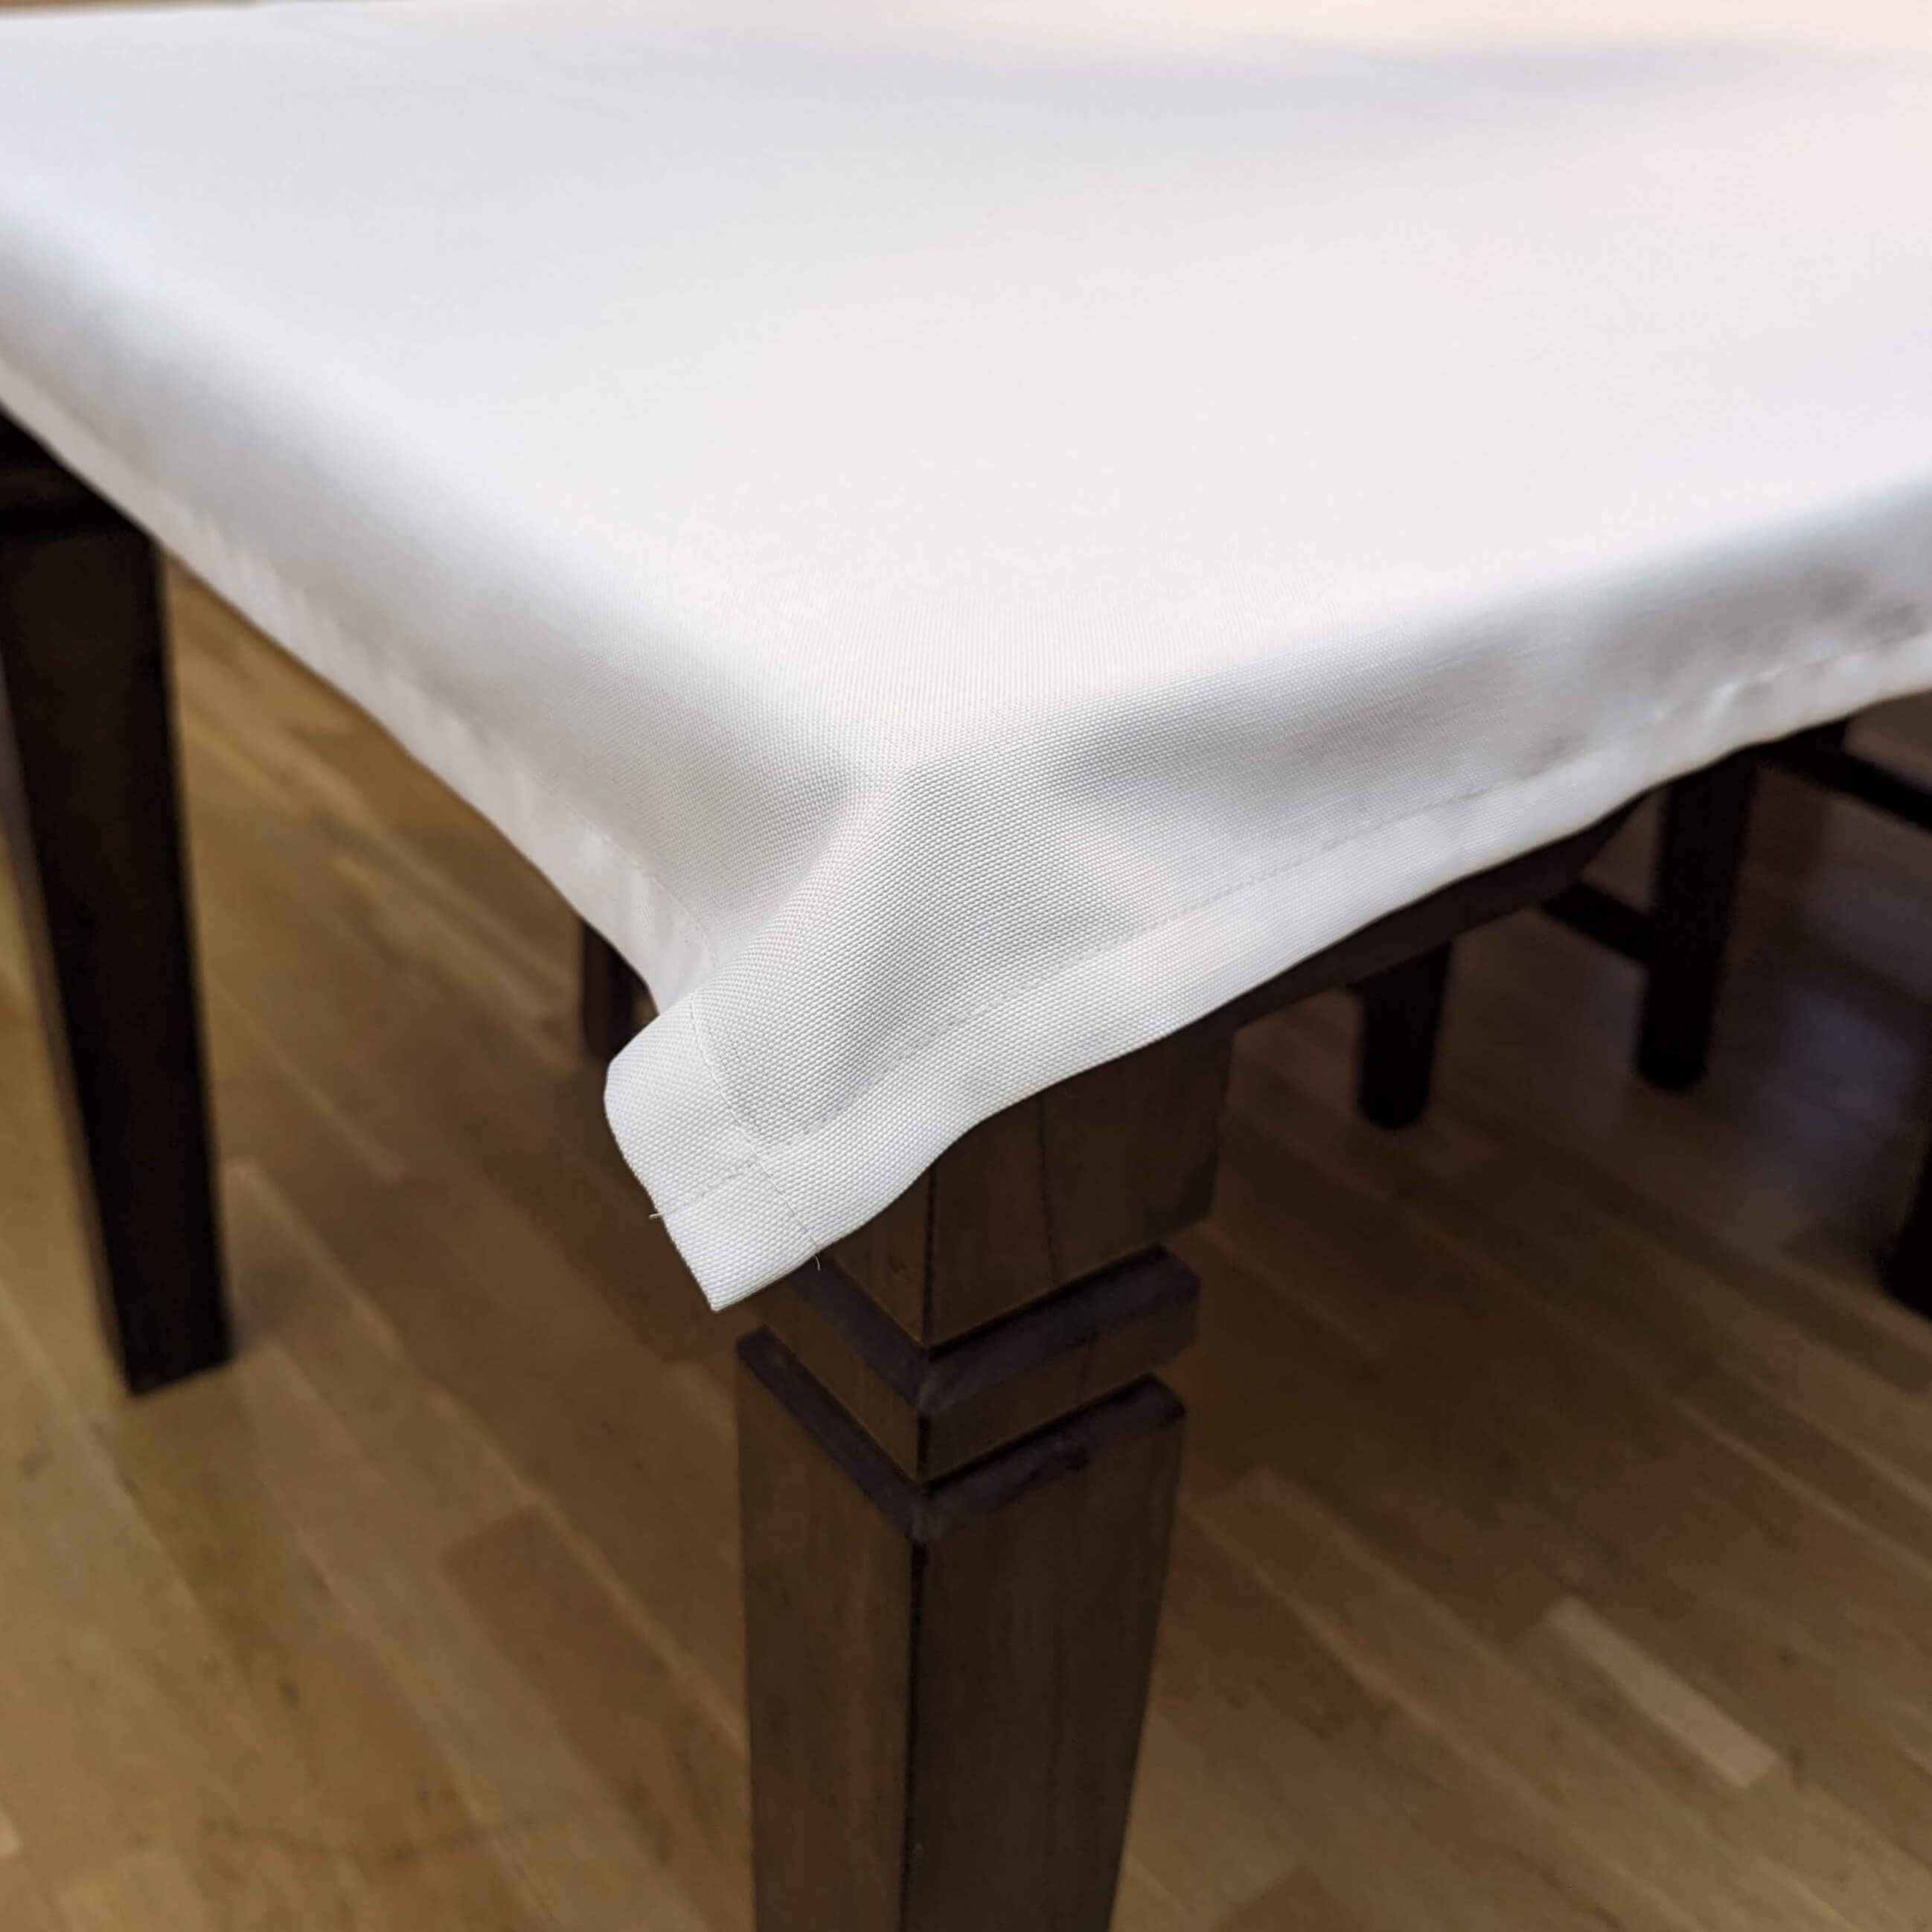 Beispiel einer Tischdecke auf einem braunen Holztisch